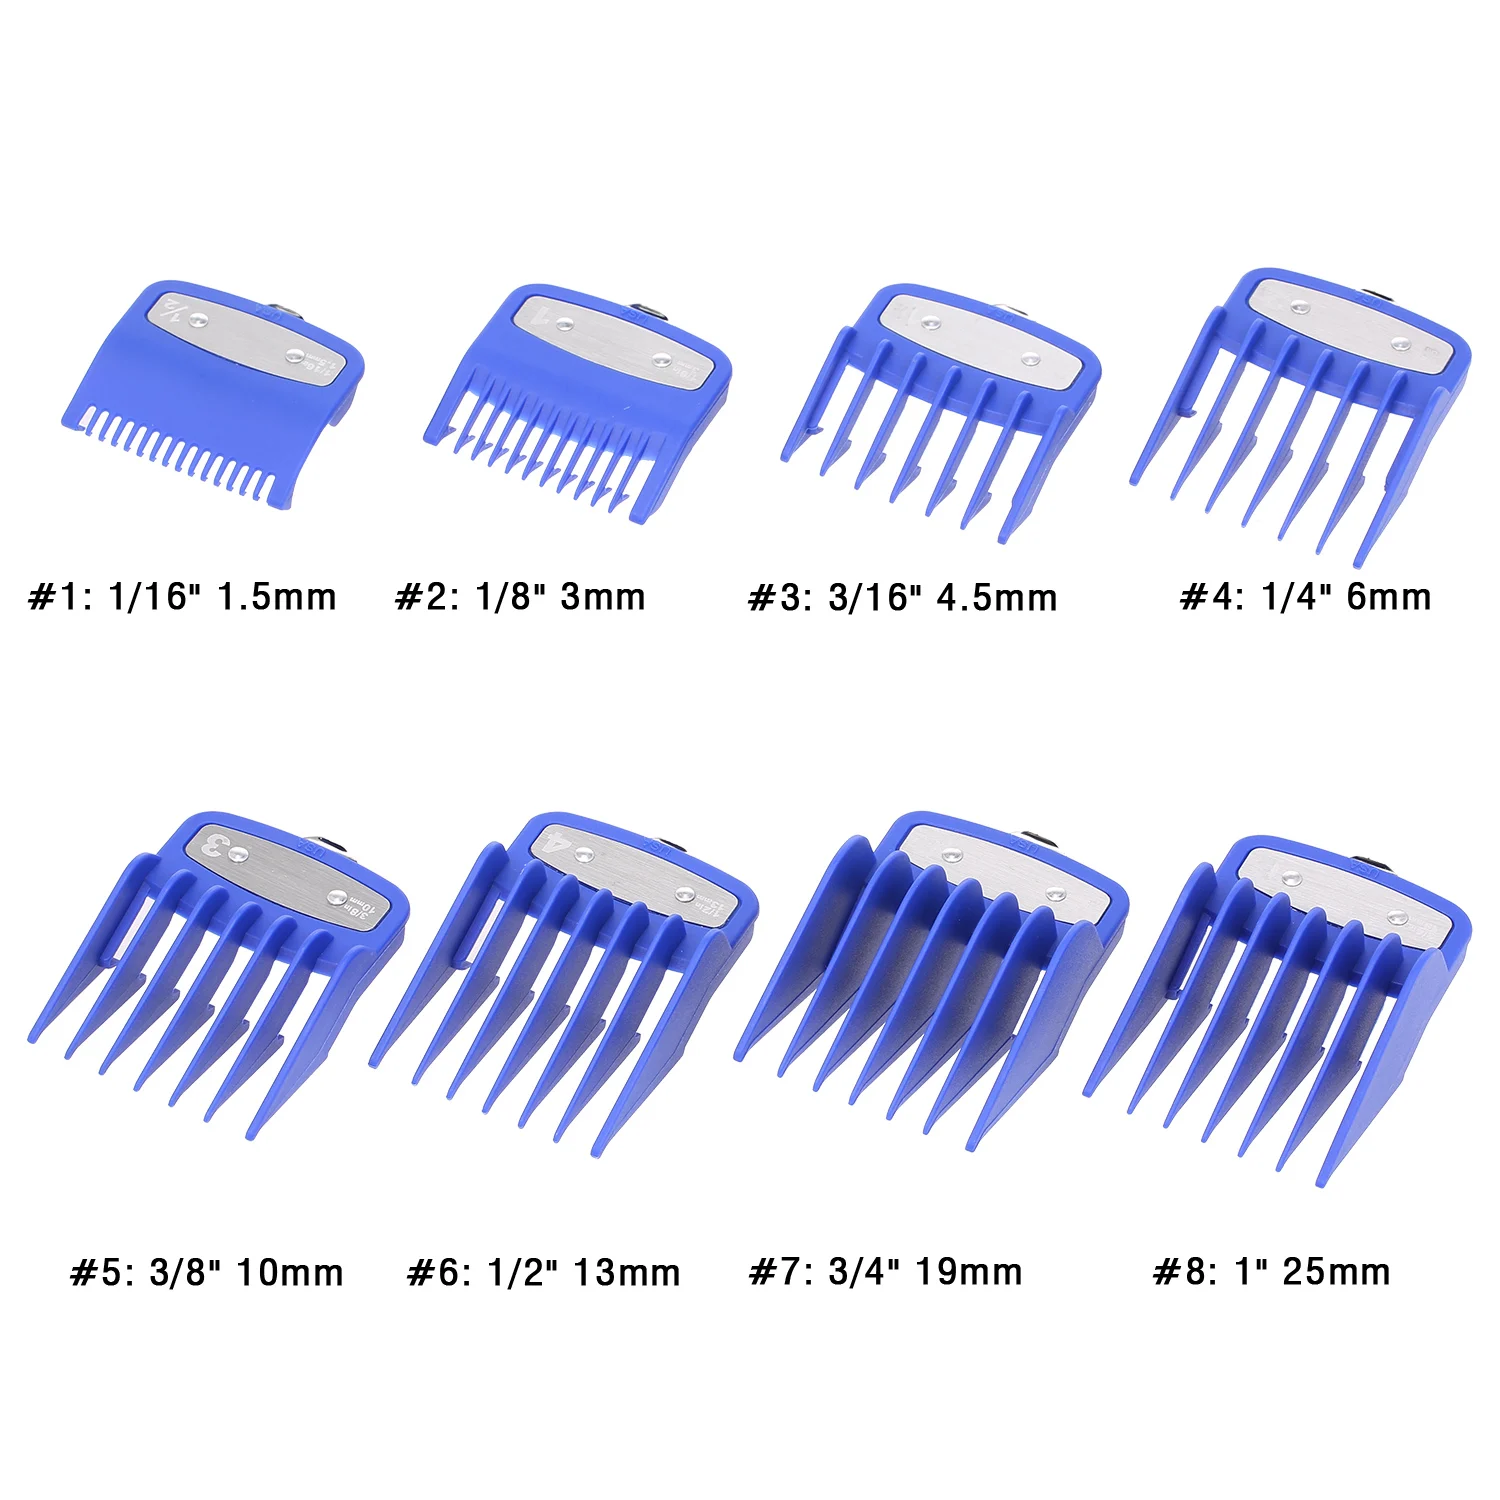 wahl clipper comb sizes